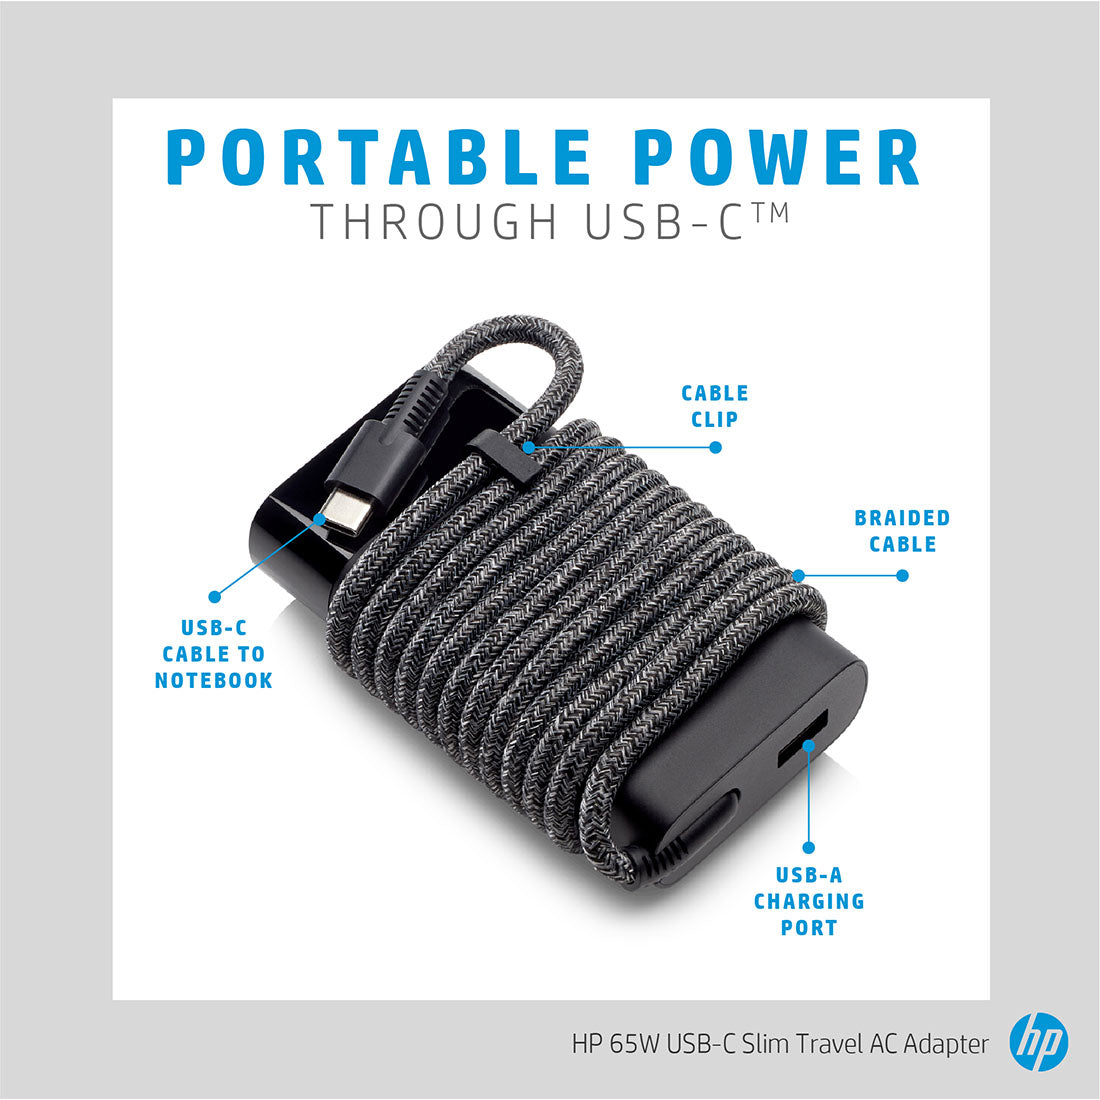 पावर कॉर्ड के साथ मोबाइल चार्जिंग के लिए USB-A पोर्ट के साथ HP 65W USB-C स्लिम ट्रैवल पावर एडेप्टर